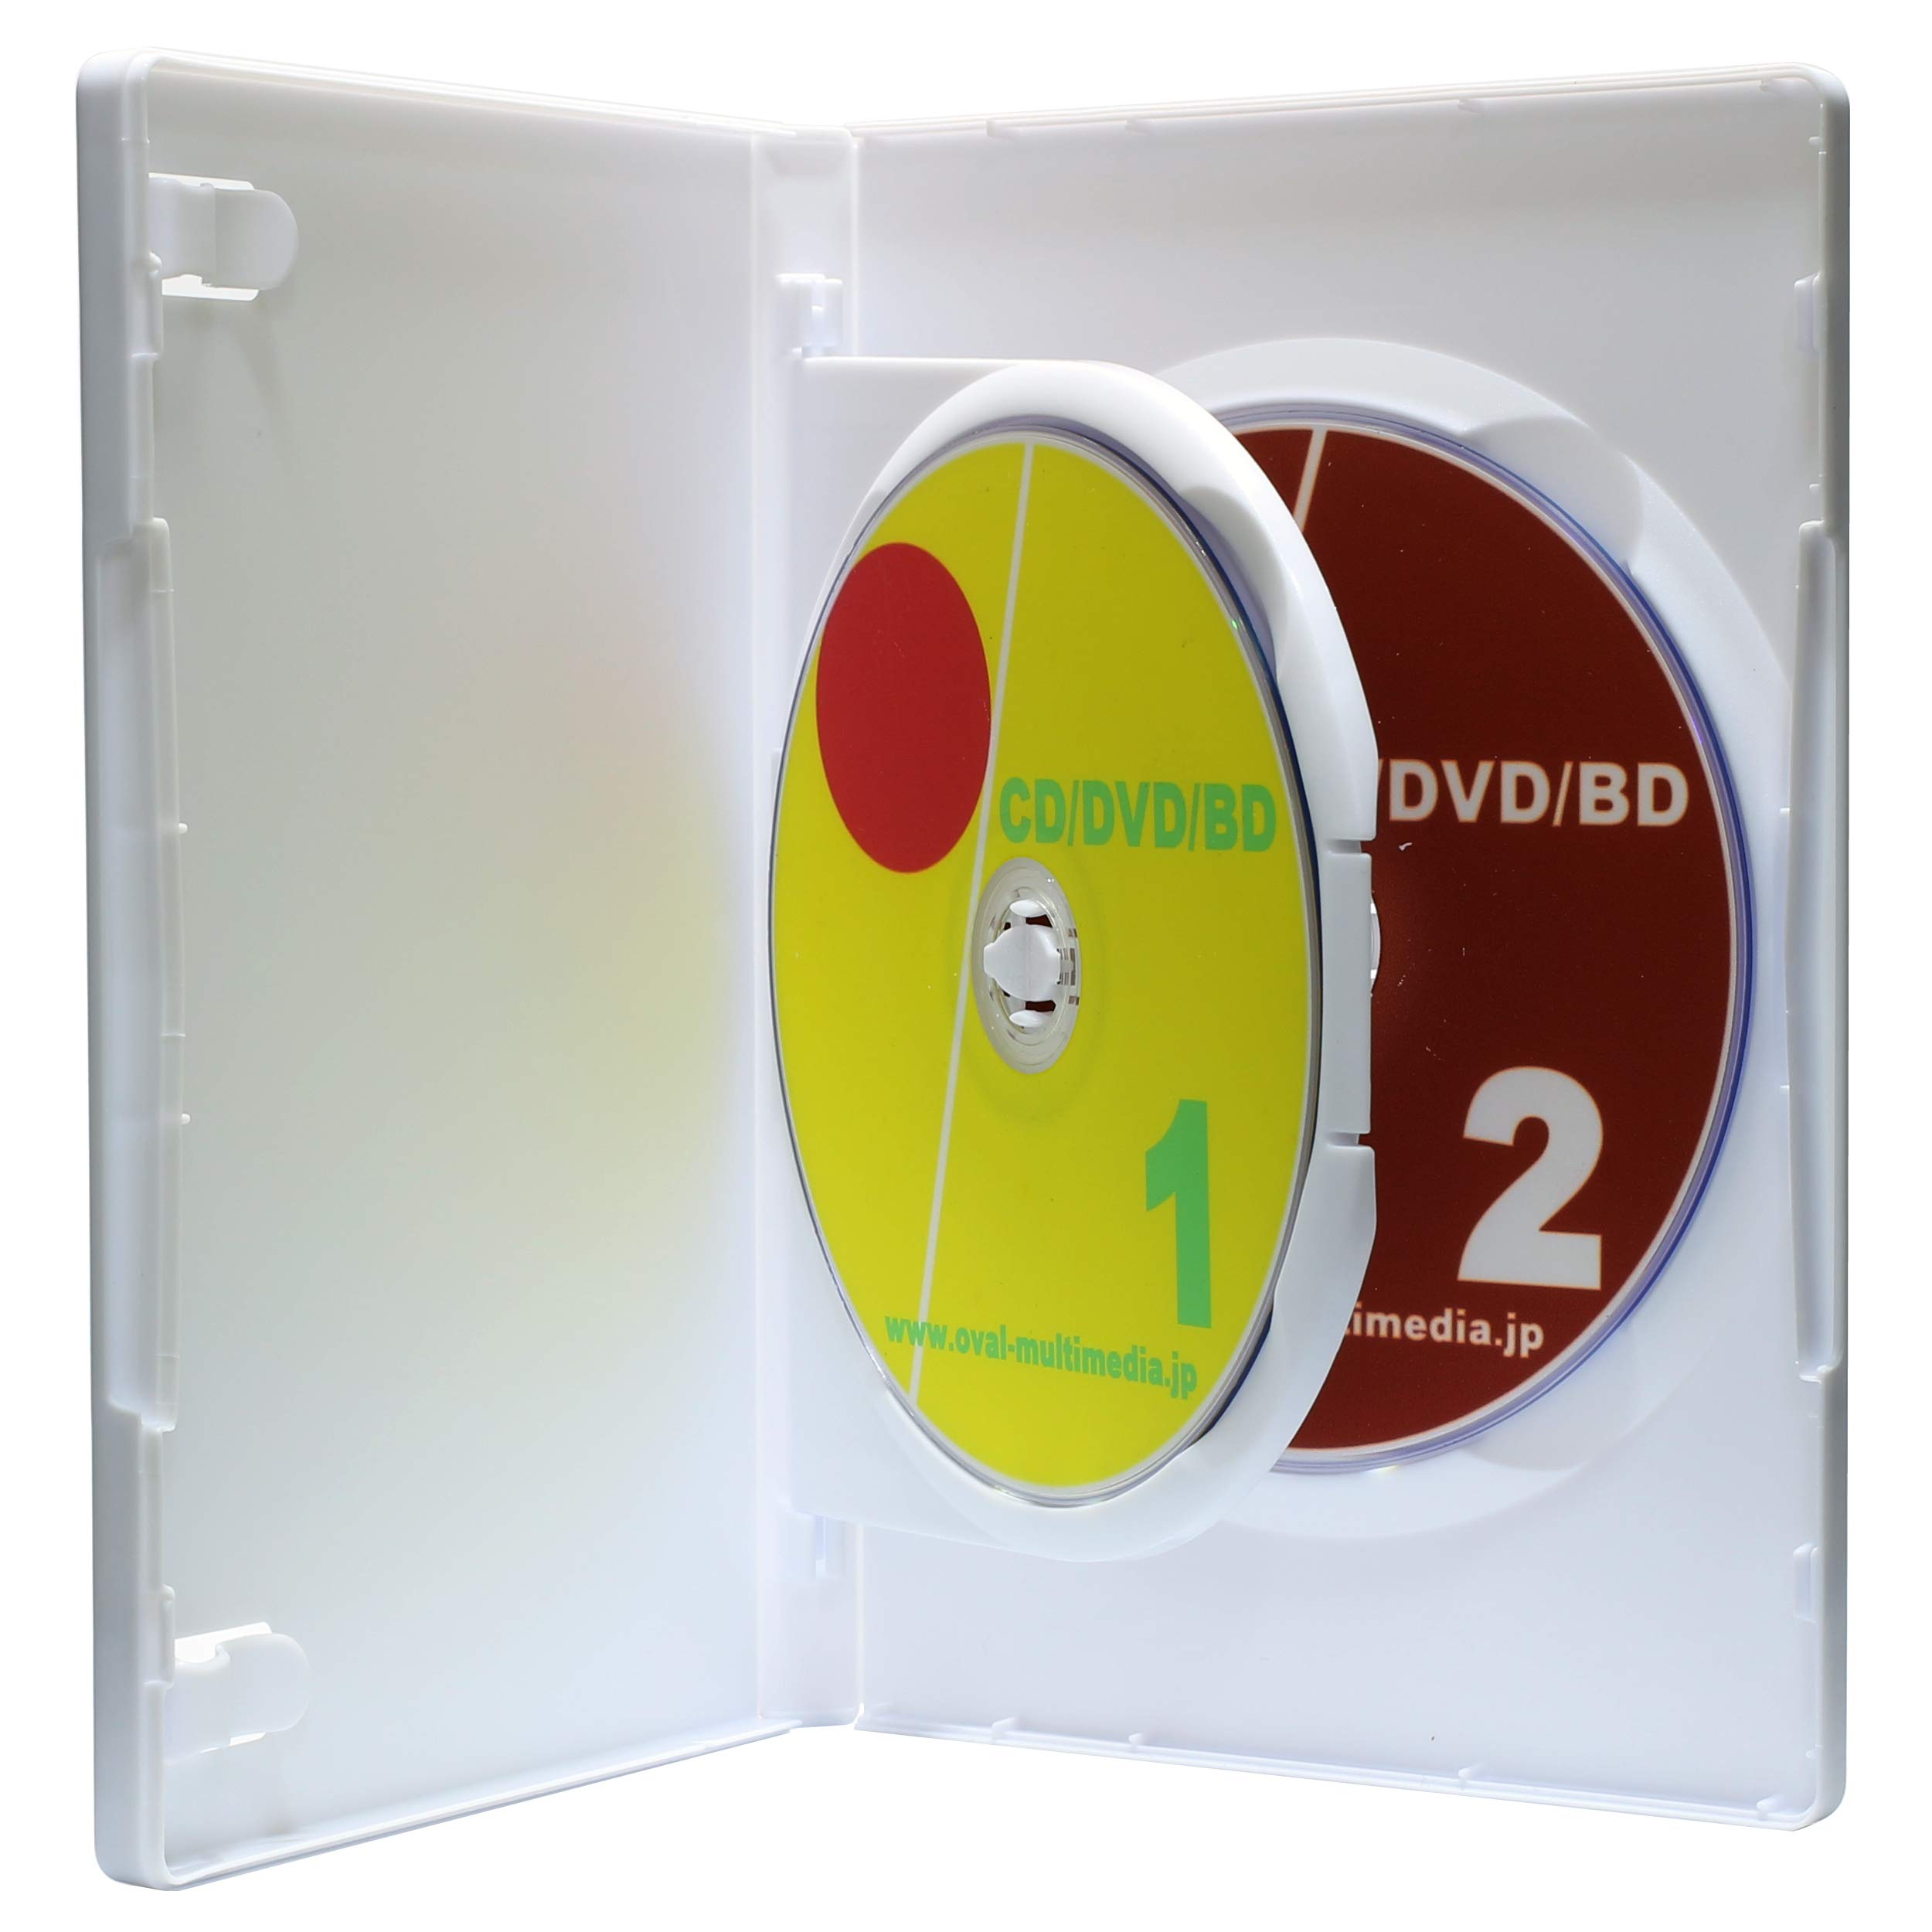 商品情報商品の説明説明 DVD/CD/Blu-rayDiscを2枚収納するケース。 ディスクの収納には特許技術のMロック式を採用。 ディスク一枚一枚をしっかりと保存し、必要なディスクのみ簡単に出し入れが可能です。 15mmの薄さに2枚収納。 1ページ目にディスクを収納しない、フリップ式ケース。主な仕様 ディスク収納枚数:2枚brBlu-rayDiscにも最適brケース外側にはジャケットを挟むフィルム(スリーブ)付brケース内1ページ目には冊子を挟むクリップ付き